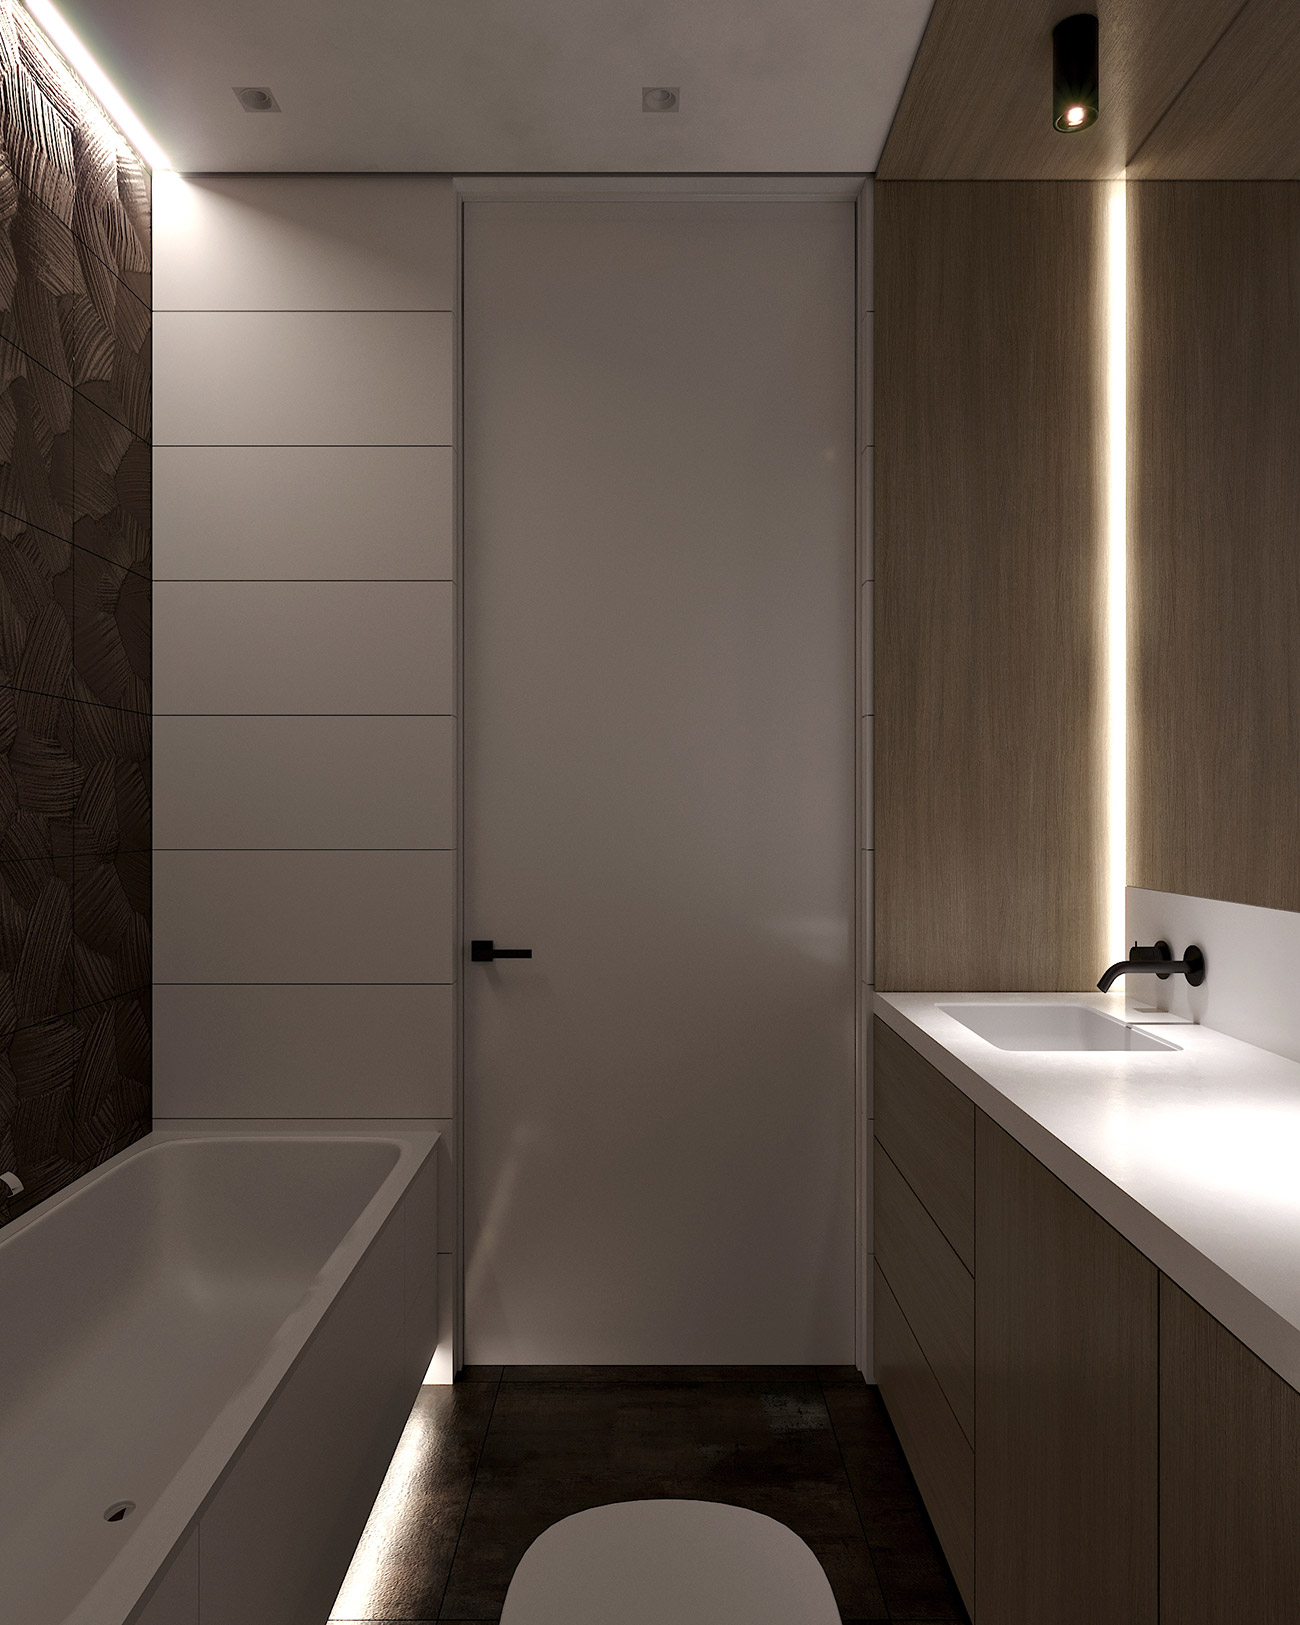 Дизайн квартиры в ЖК Парк авеню - Мастер ванная